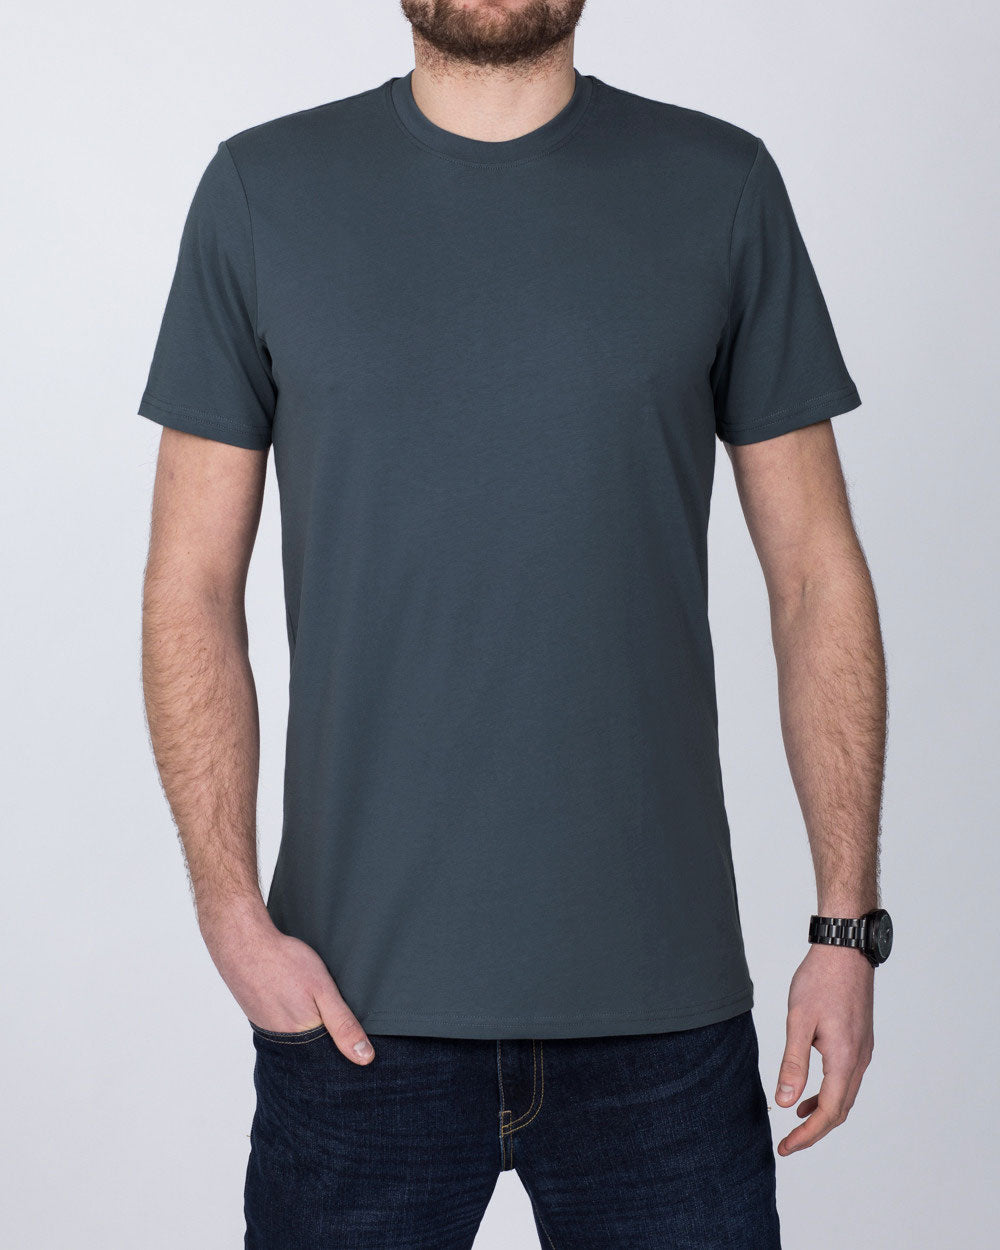 Girav Sydney Tall T-Shirt (dark grey)